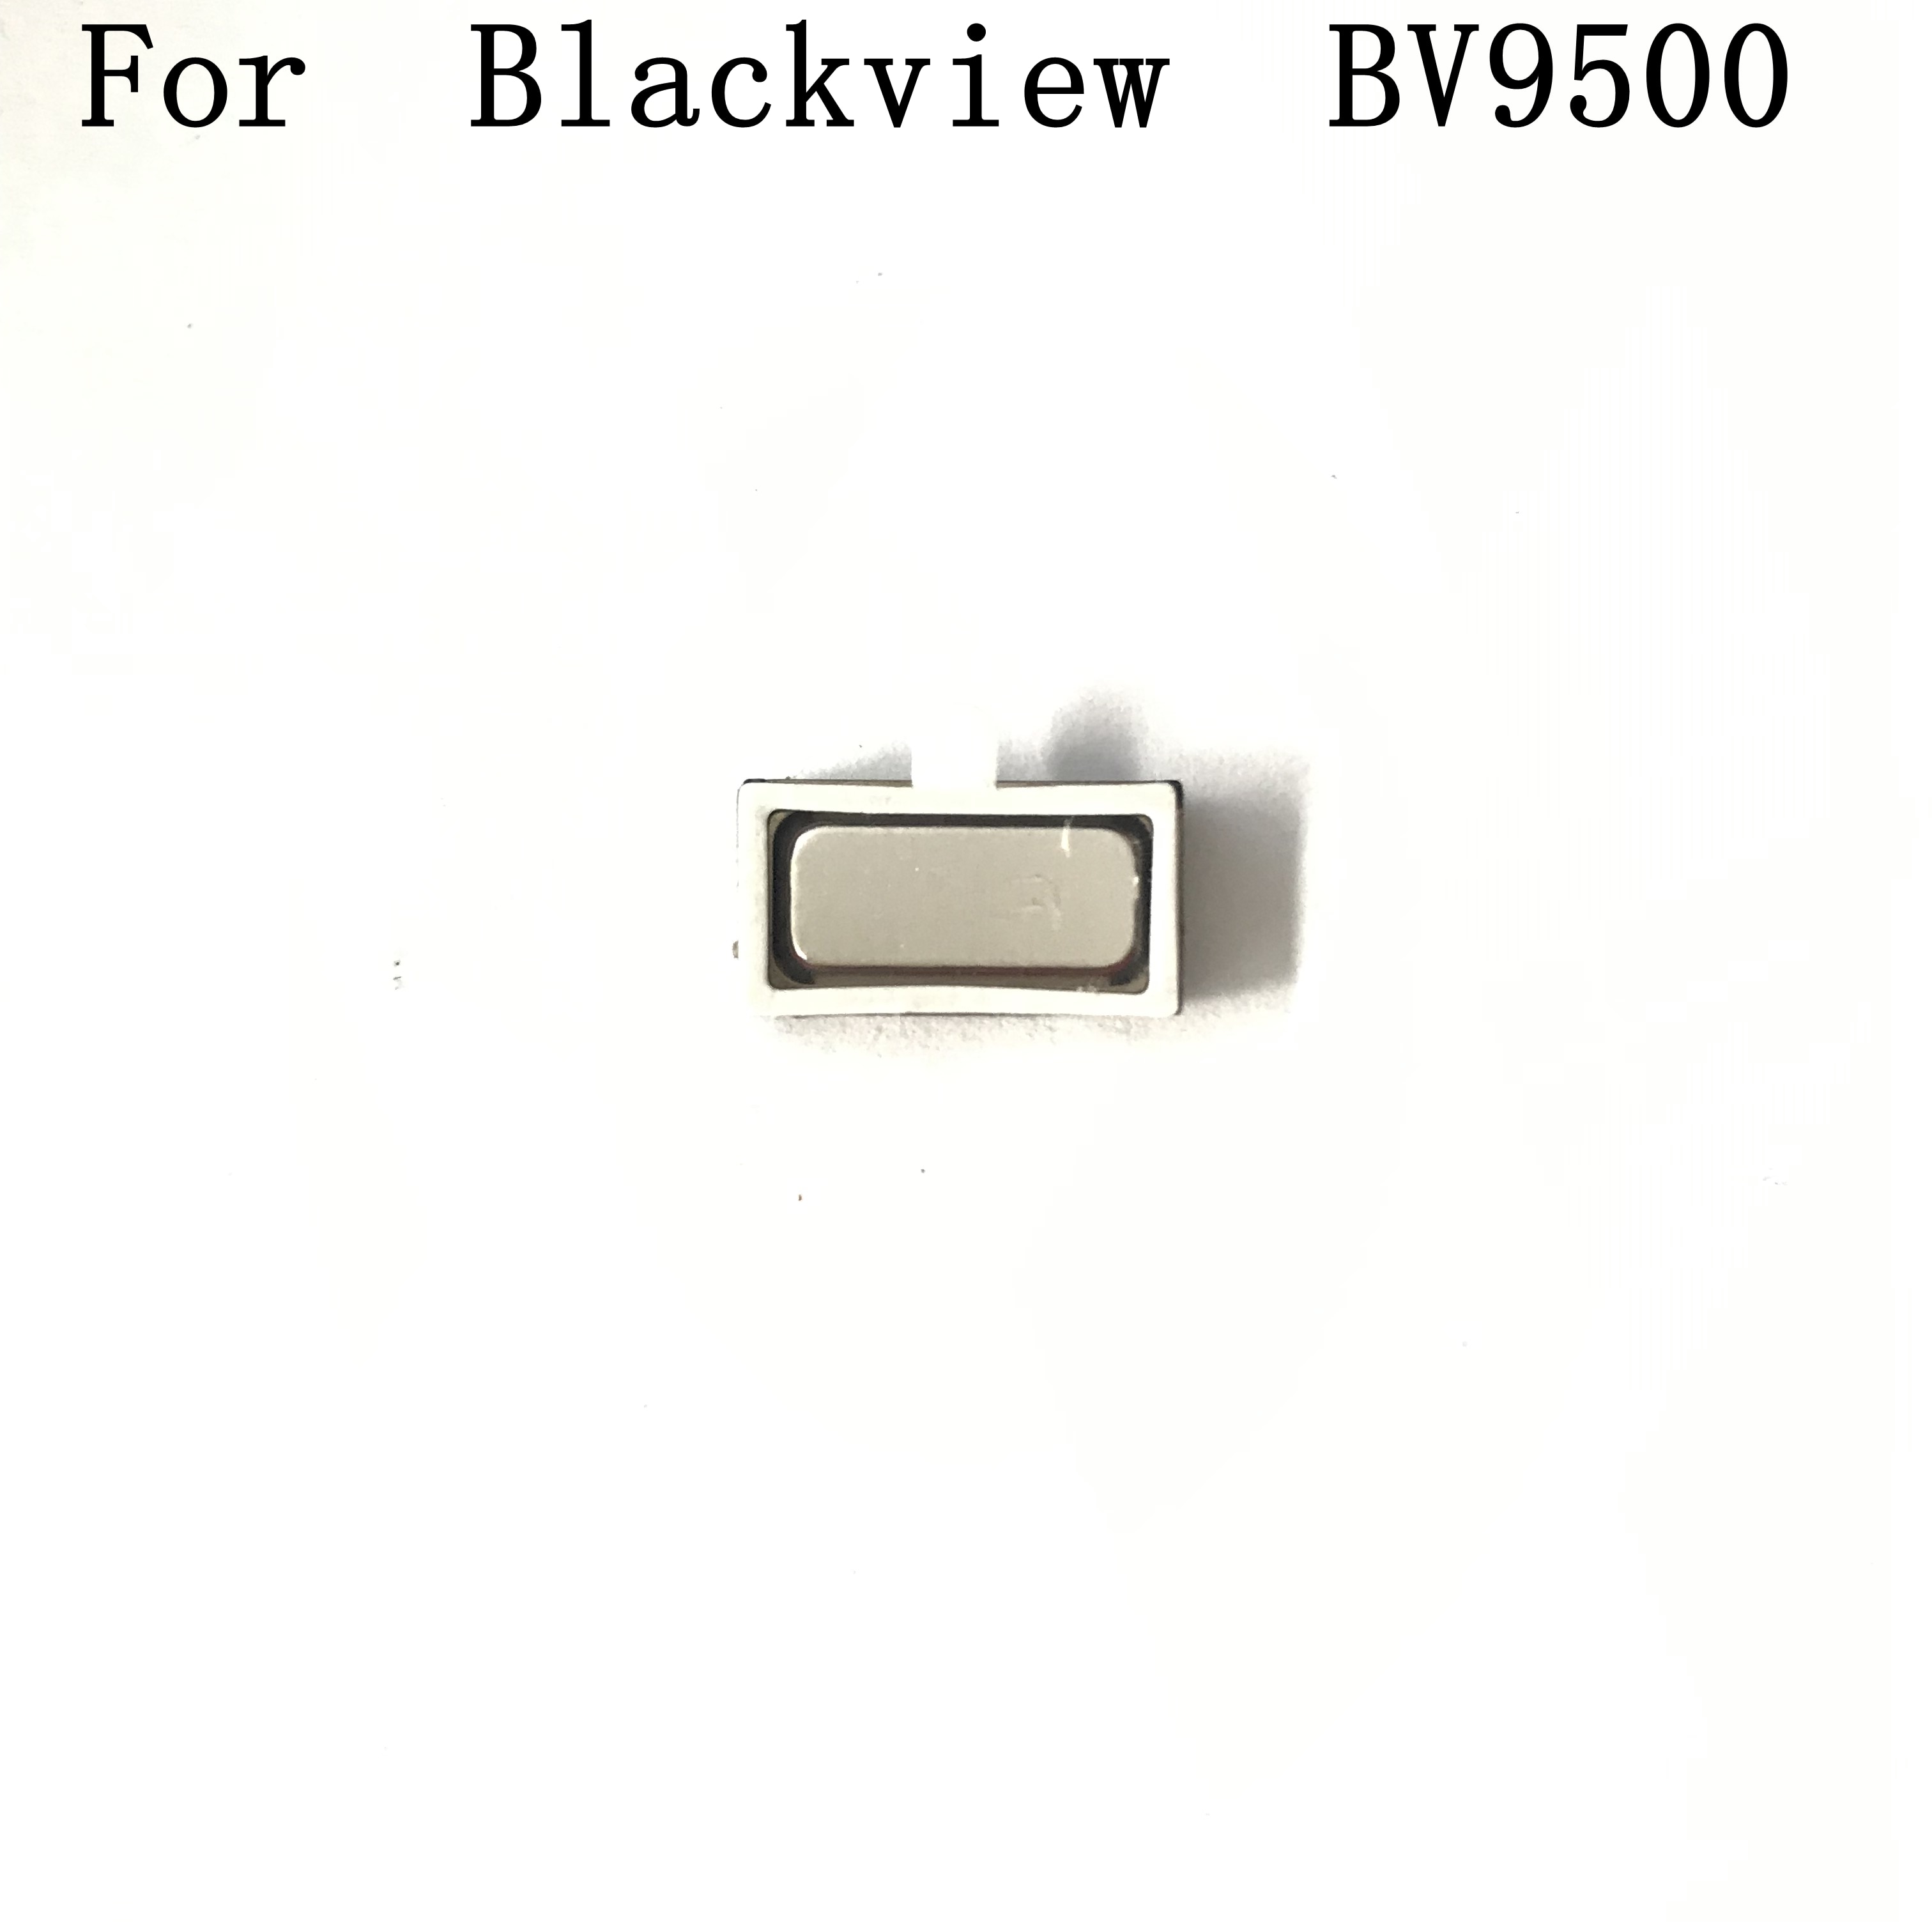  Blackview BV9500 Blackview BV9500 Pro  ..